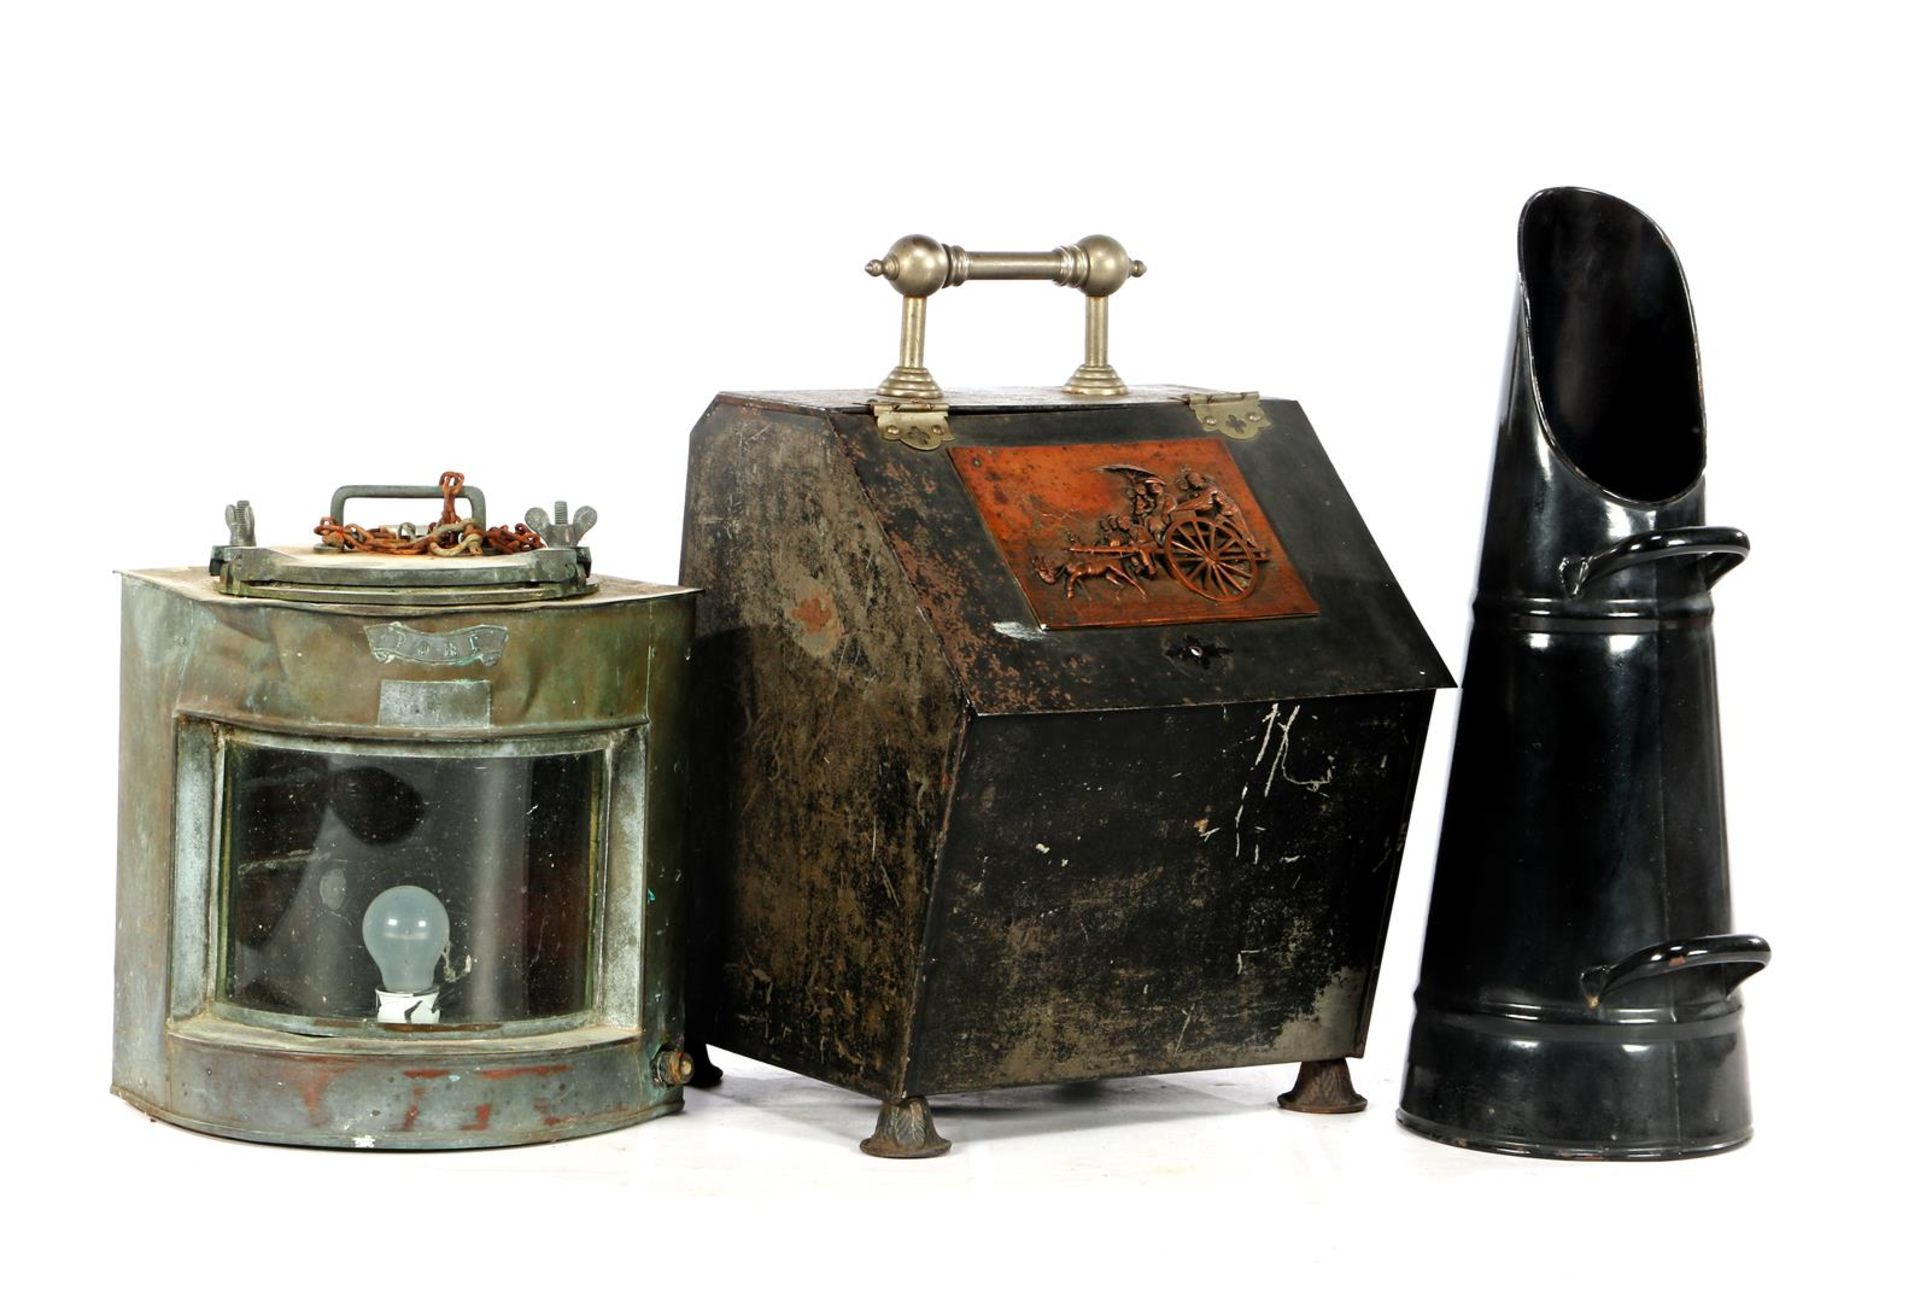 Coal kit, coal bin and ship lamp, maximum 62 cm